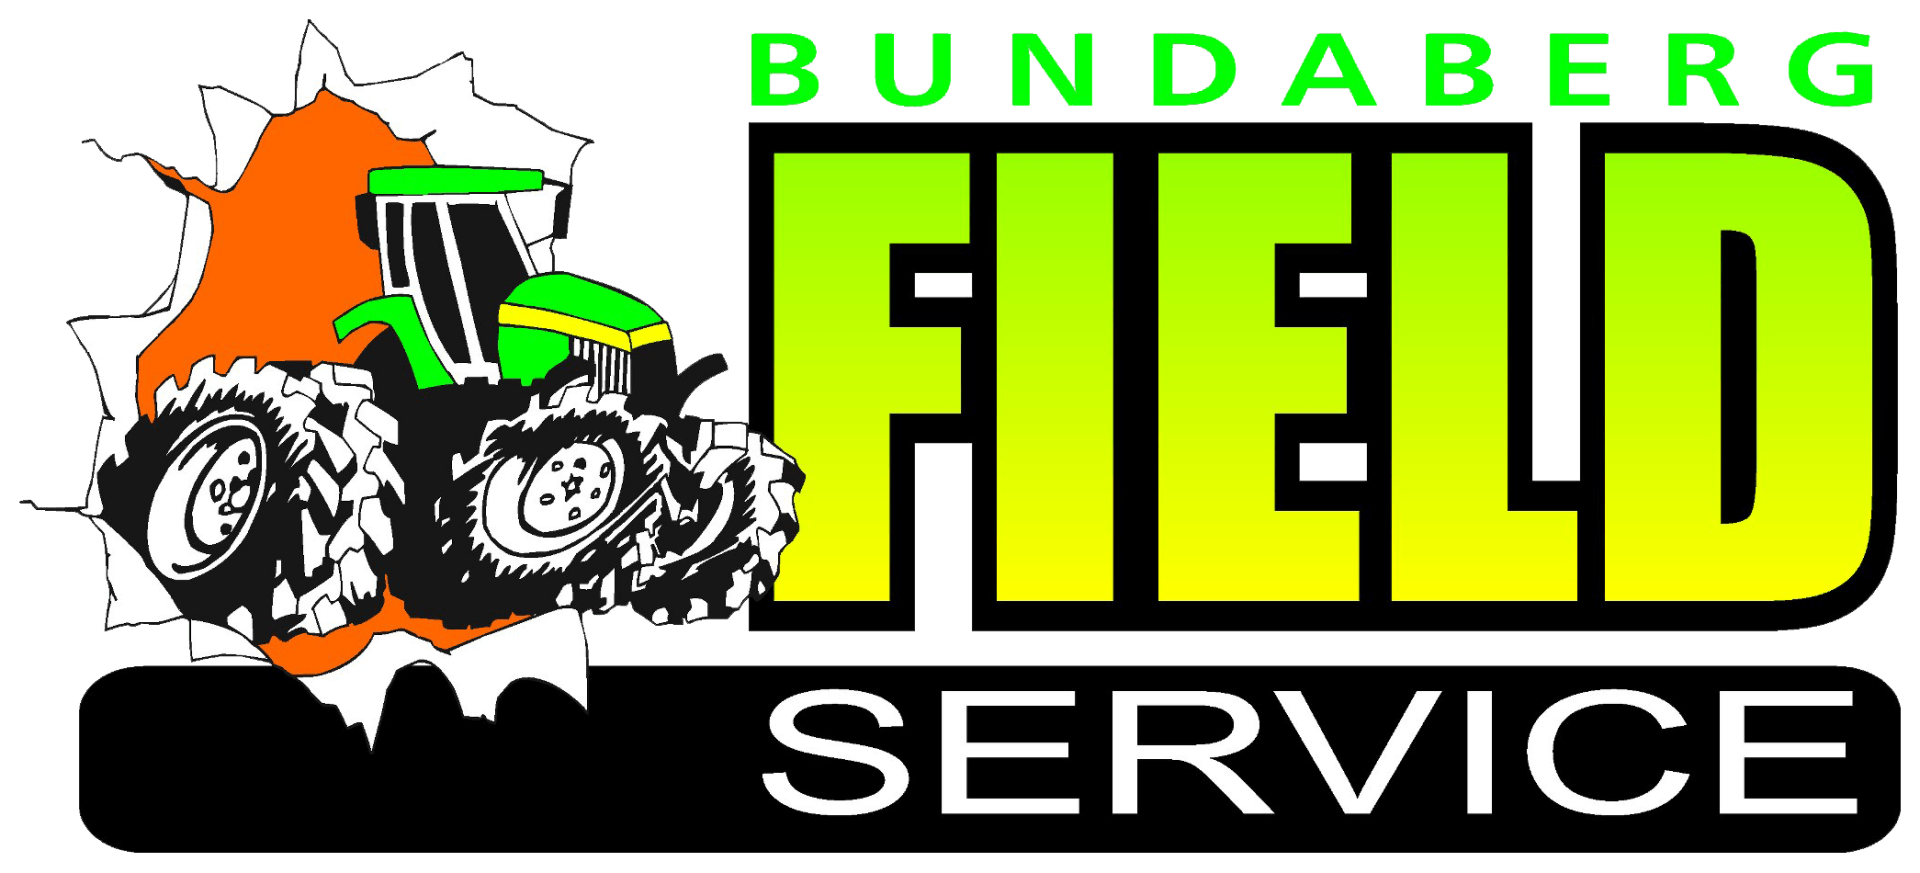 Bundaberg Field Service: Experienced Diesel Fitter in Bundaberg